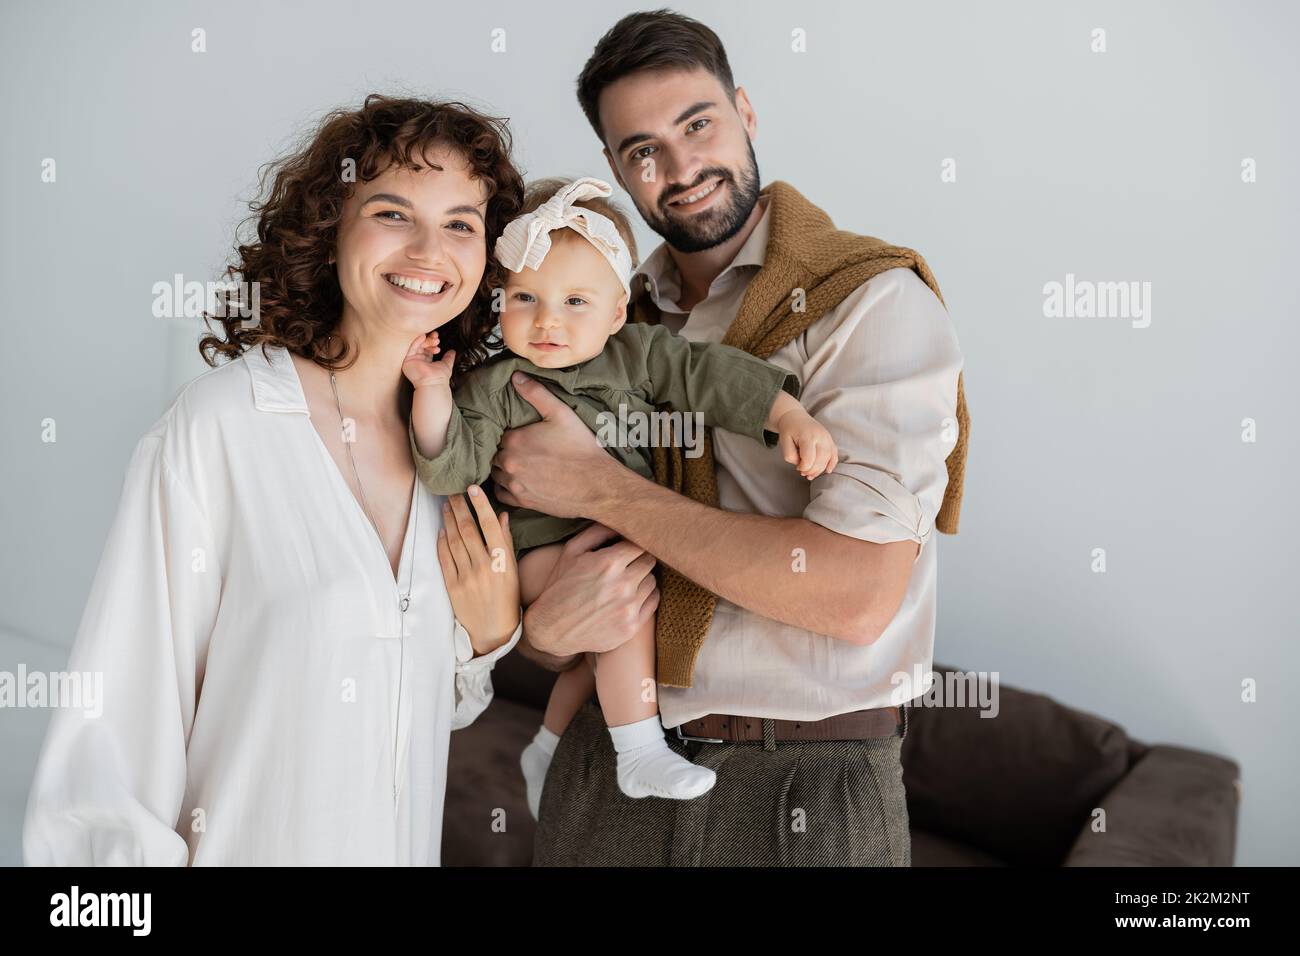 hombre barbudo positivo sosteniendo en brazos a la hija del bebé en la diadema cerca de esposa rizada, imagen de archivo Foto de stock